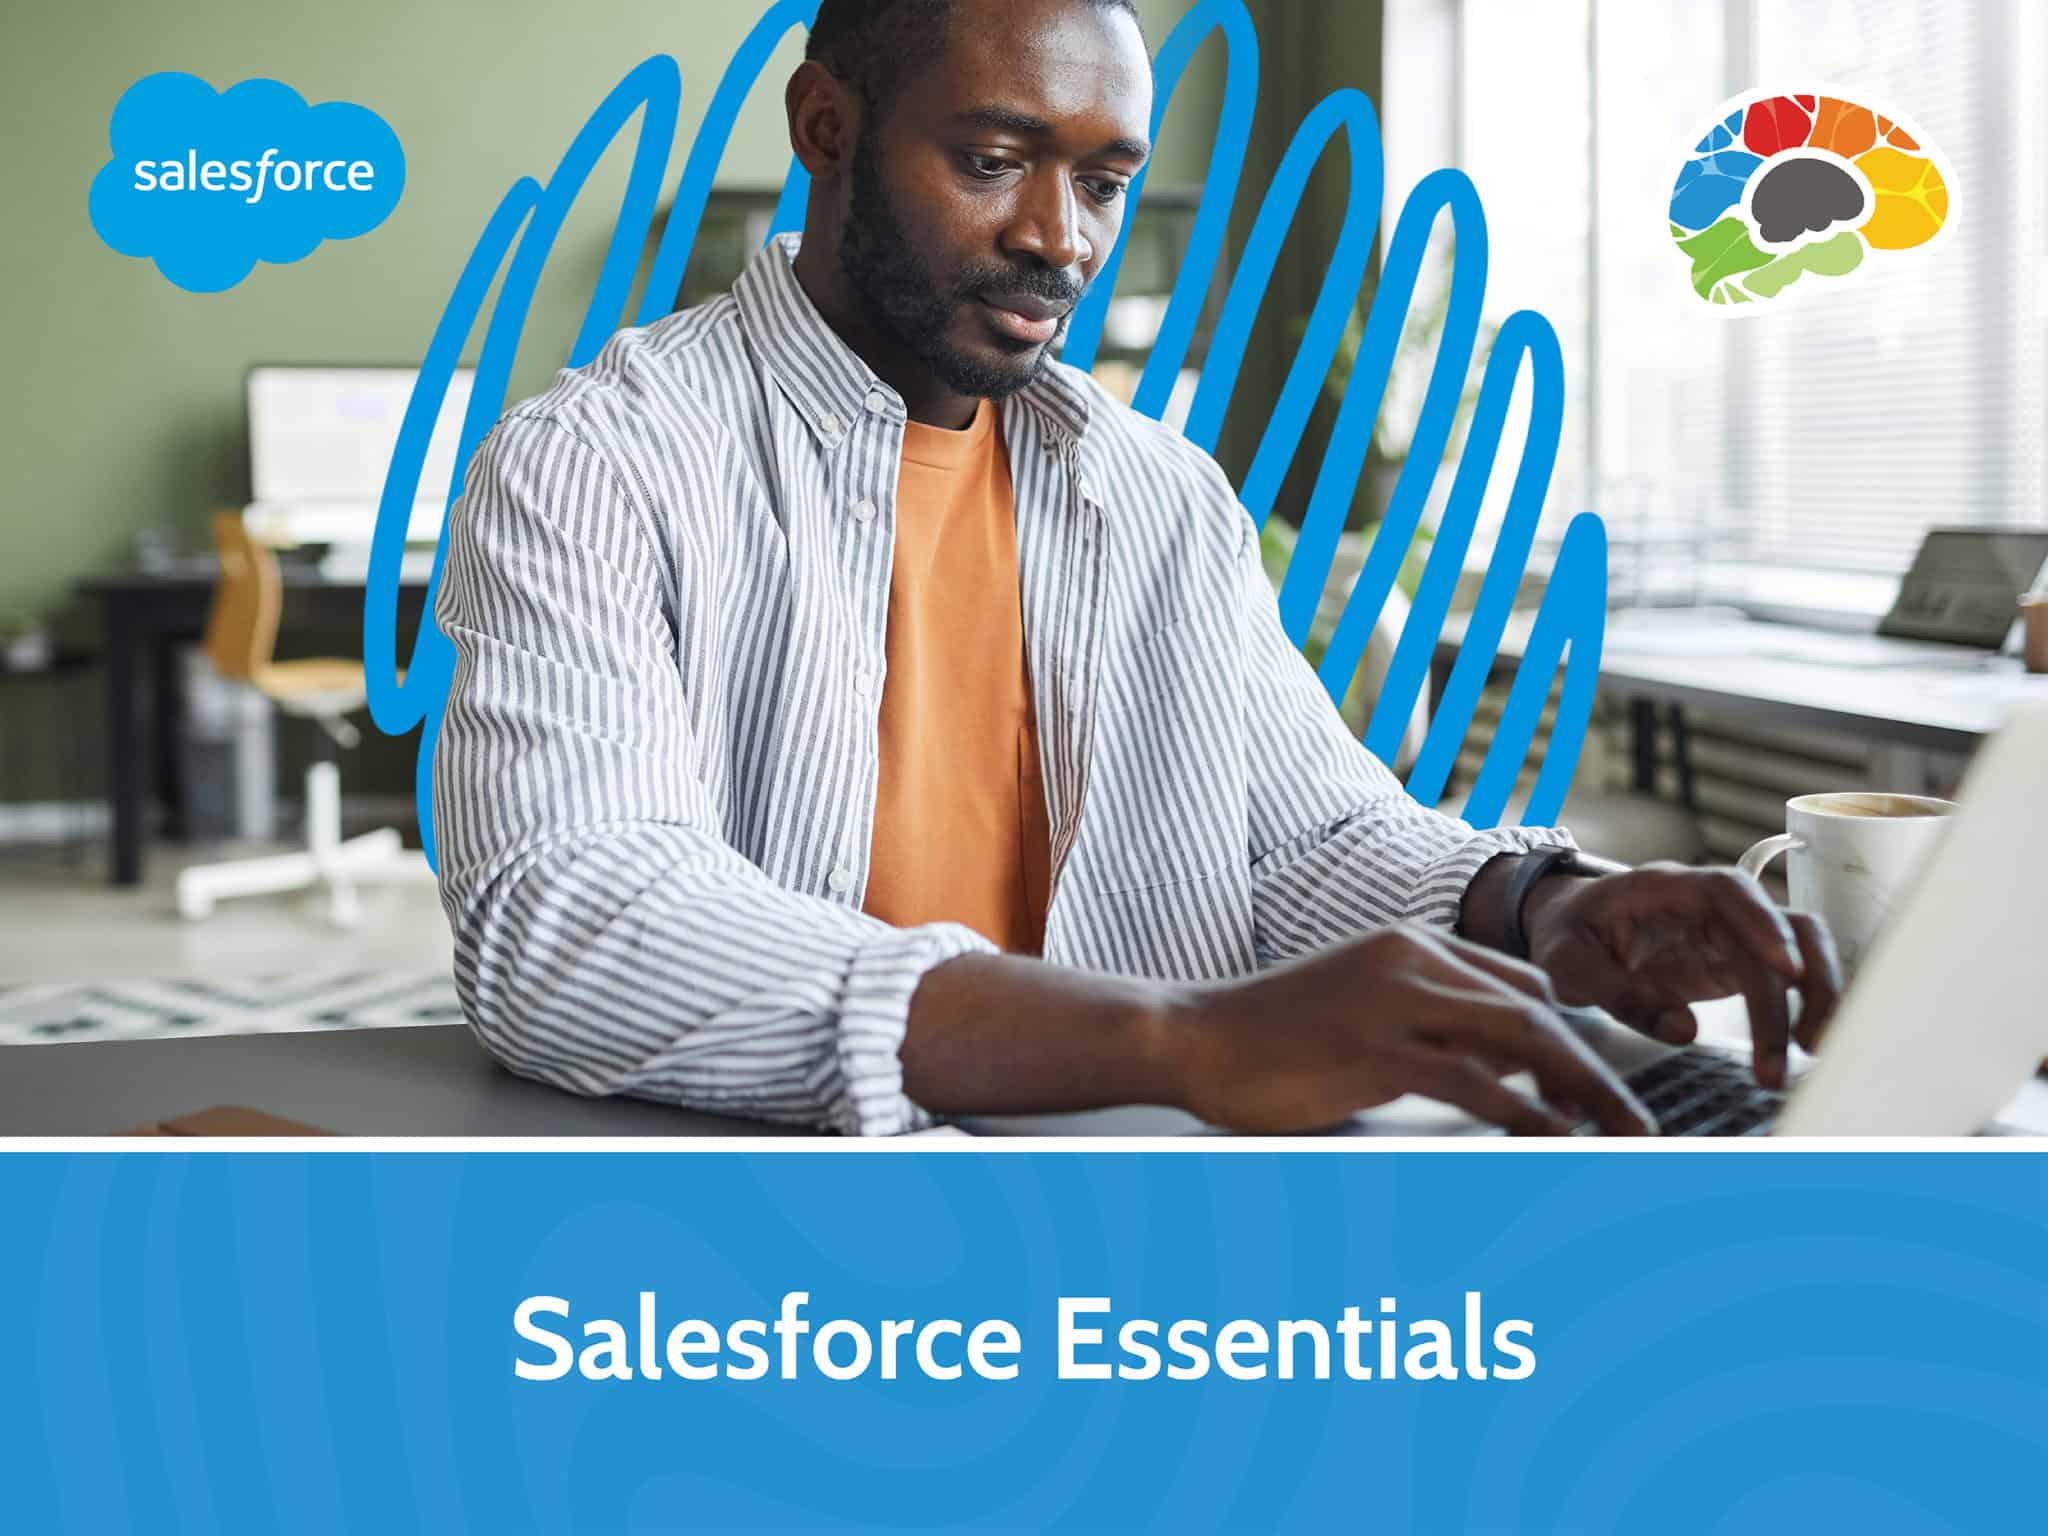 Salesforce Essentials scaled